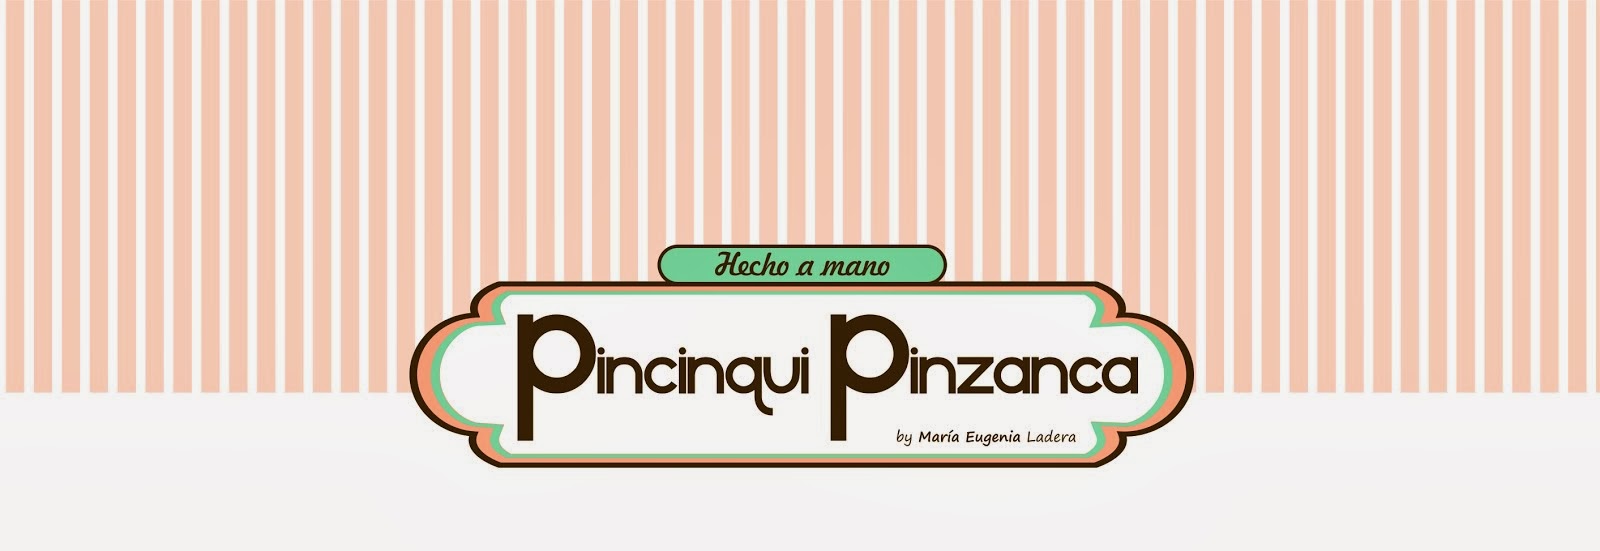 Pincinqui Pinzanca